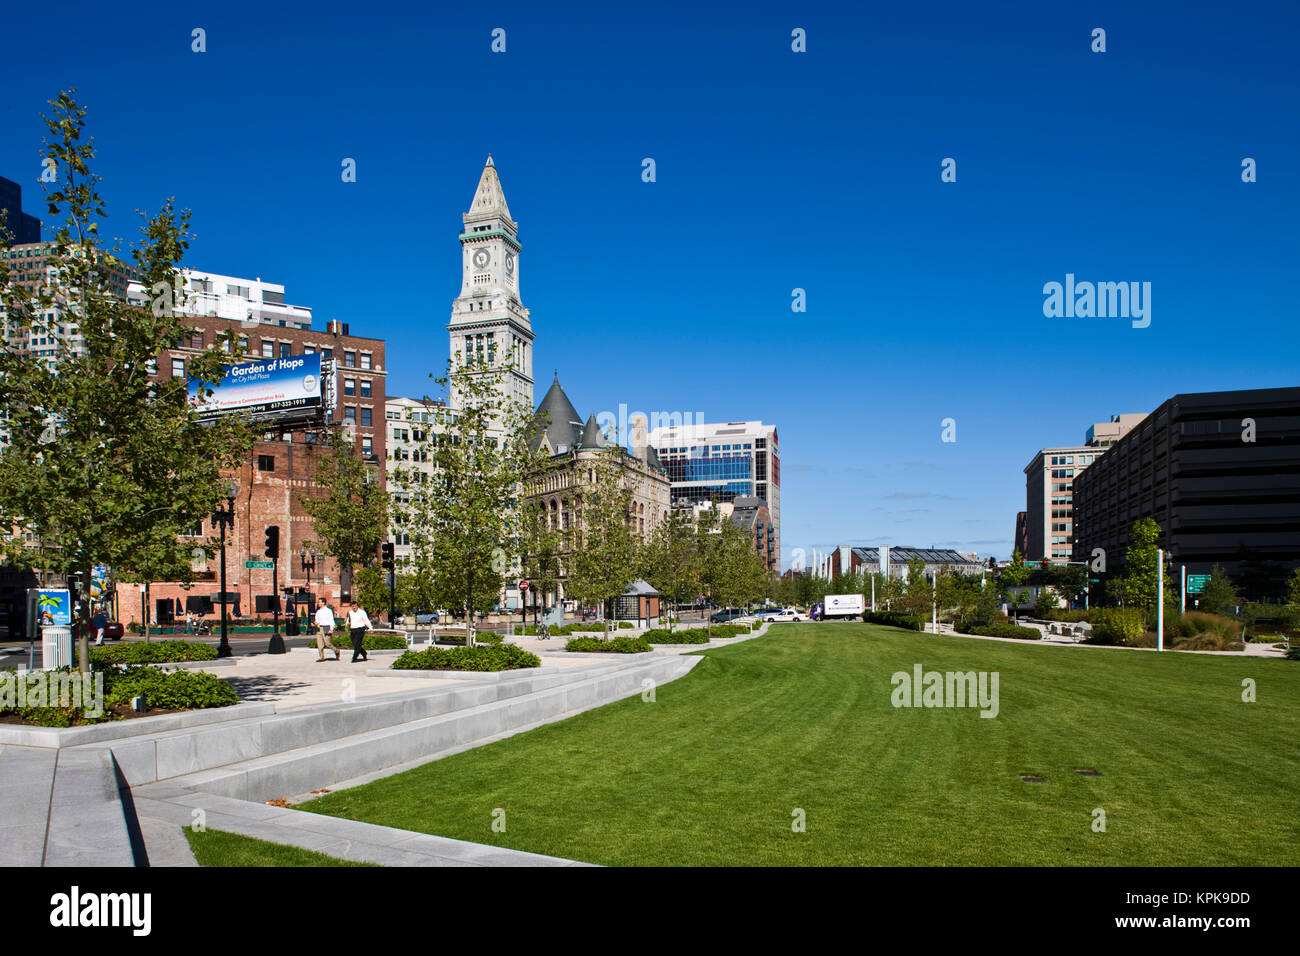 États-unis, Massachusetts, Boston. Atlantic Avenue Greenway et Customs House. Banque D'Images